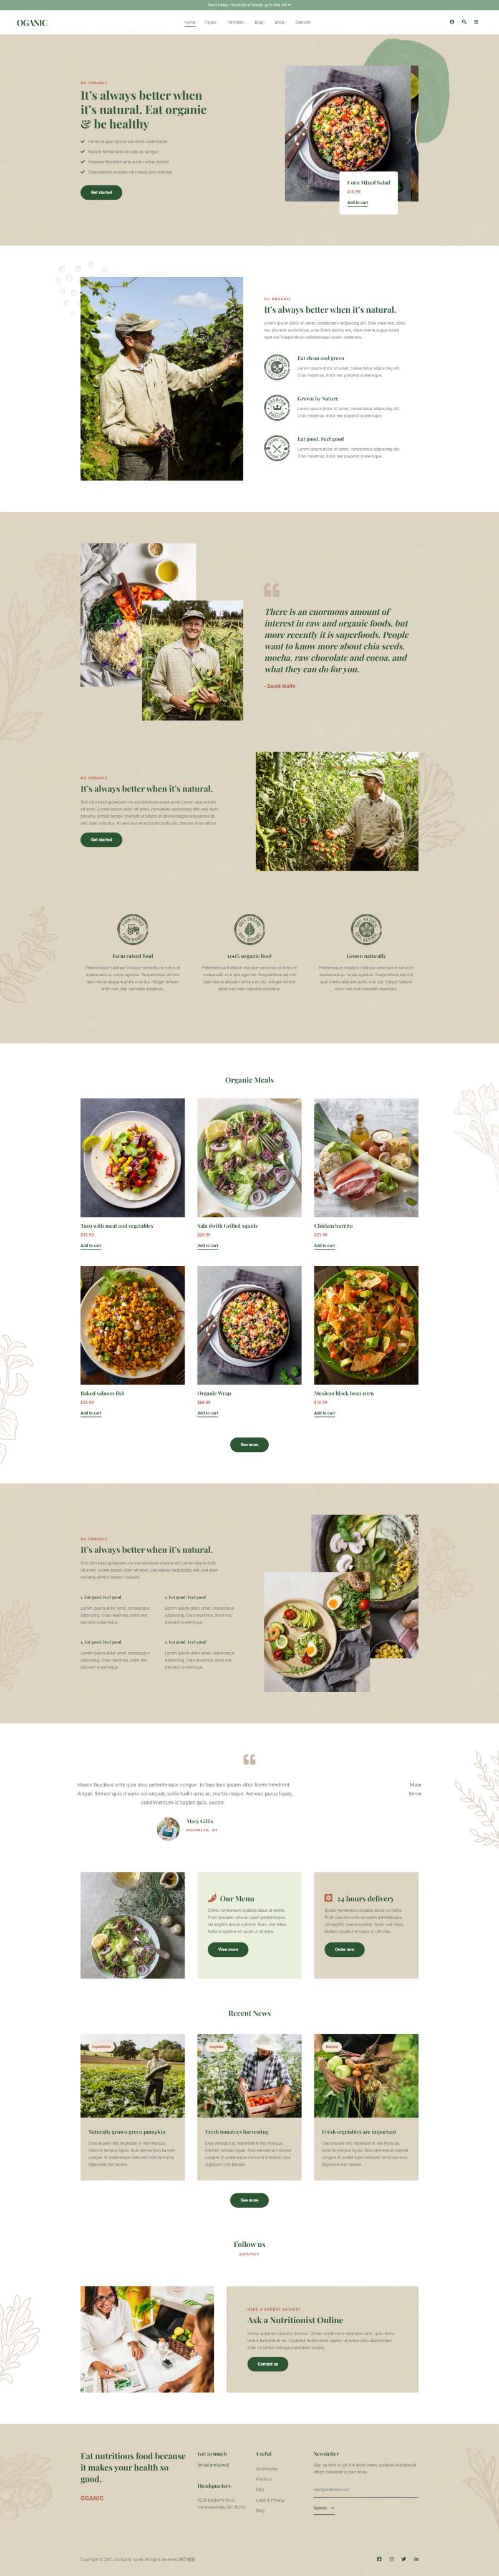 美食电商网站模板设计，优质的食品加工网站模板设计